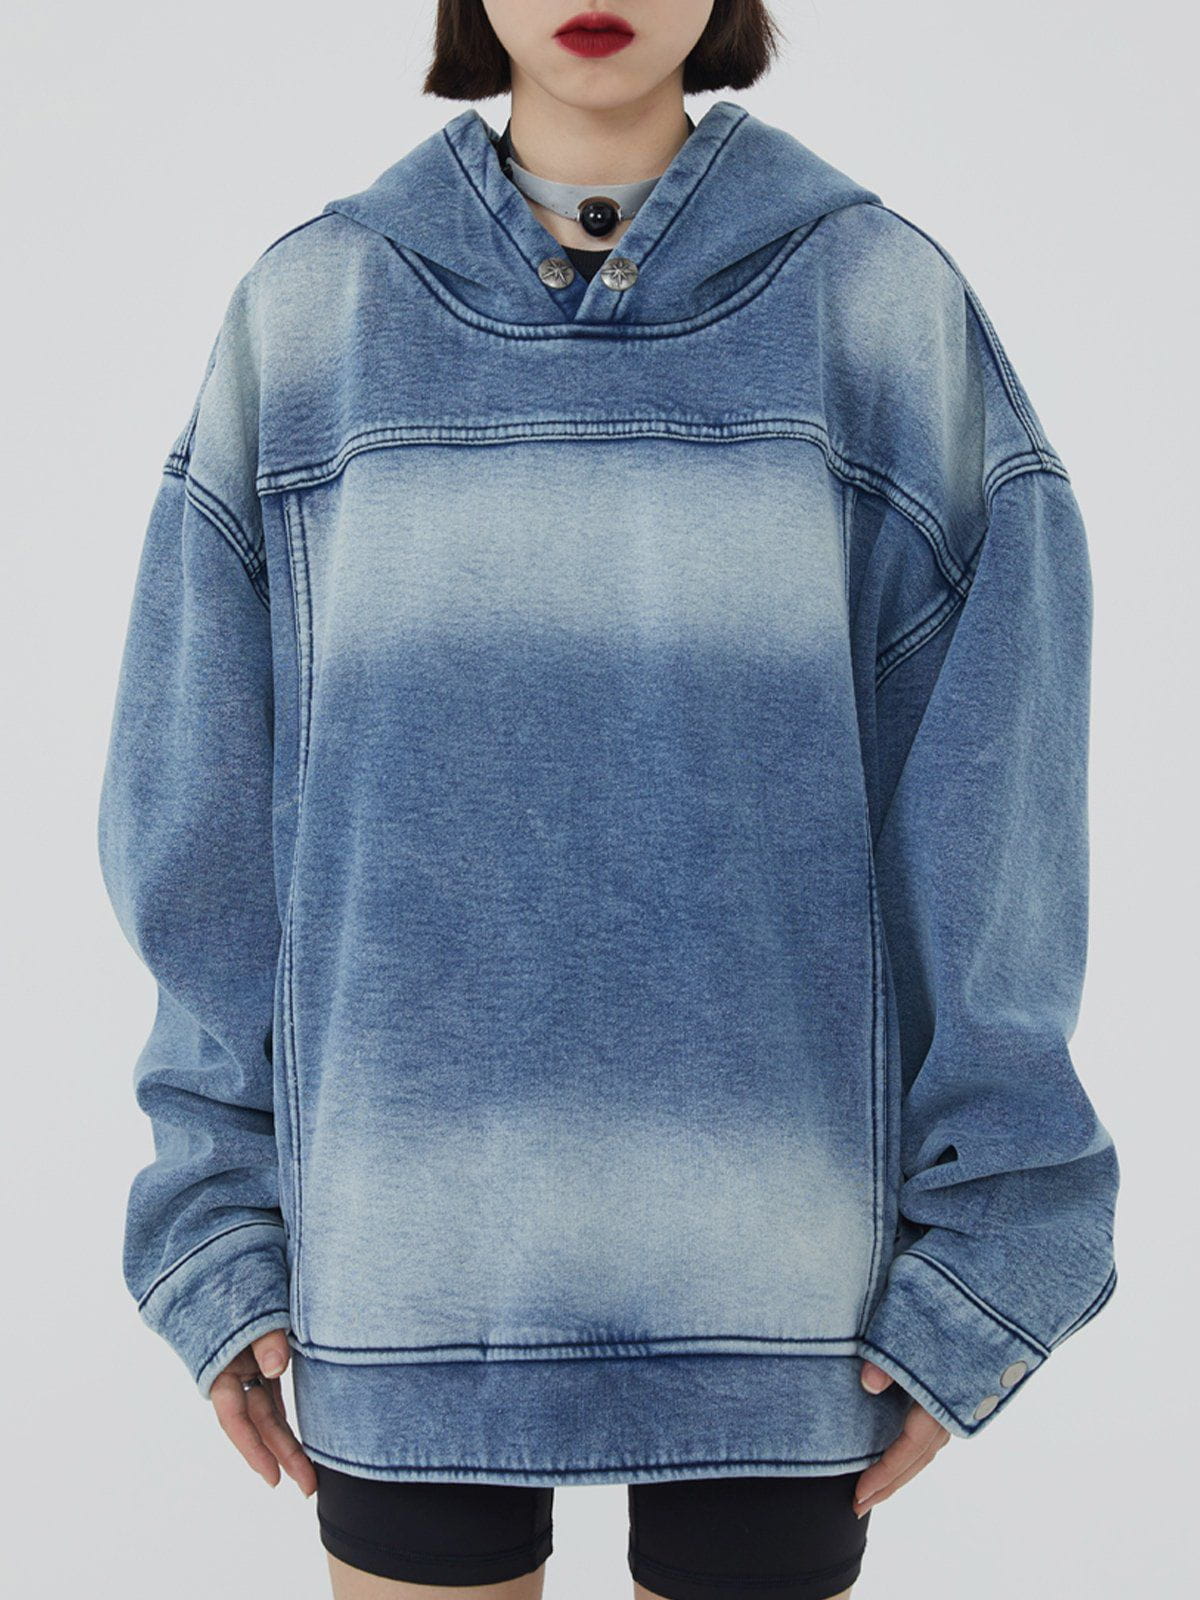 Majesda® - Tie Dye Hooded Denim Winter Coat outfit ideas streetwear fashion